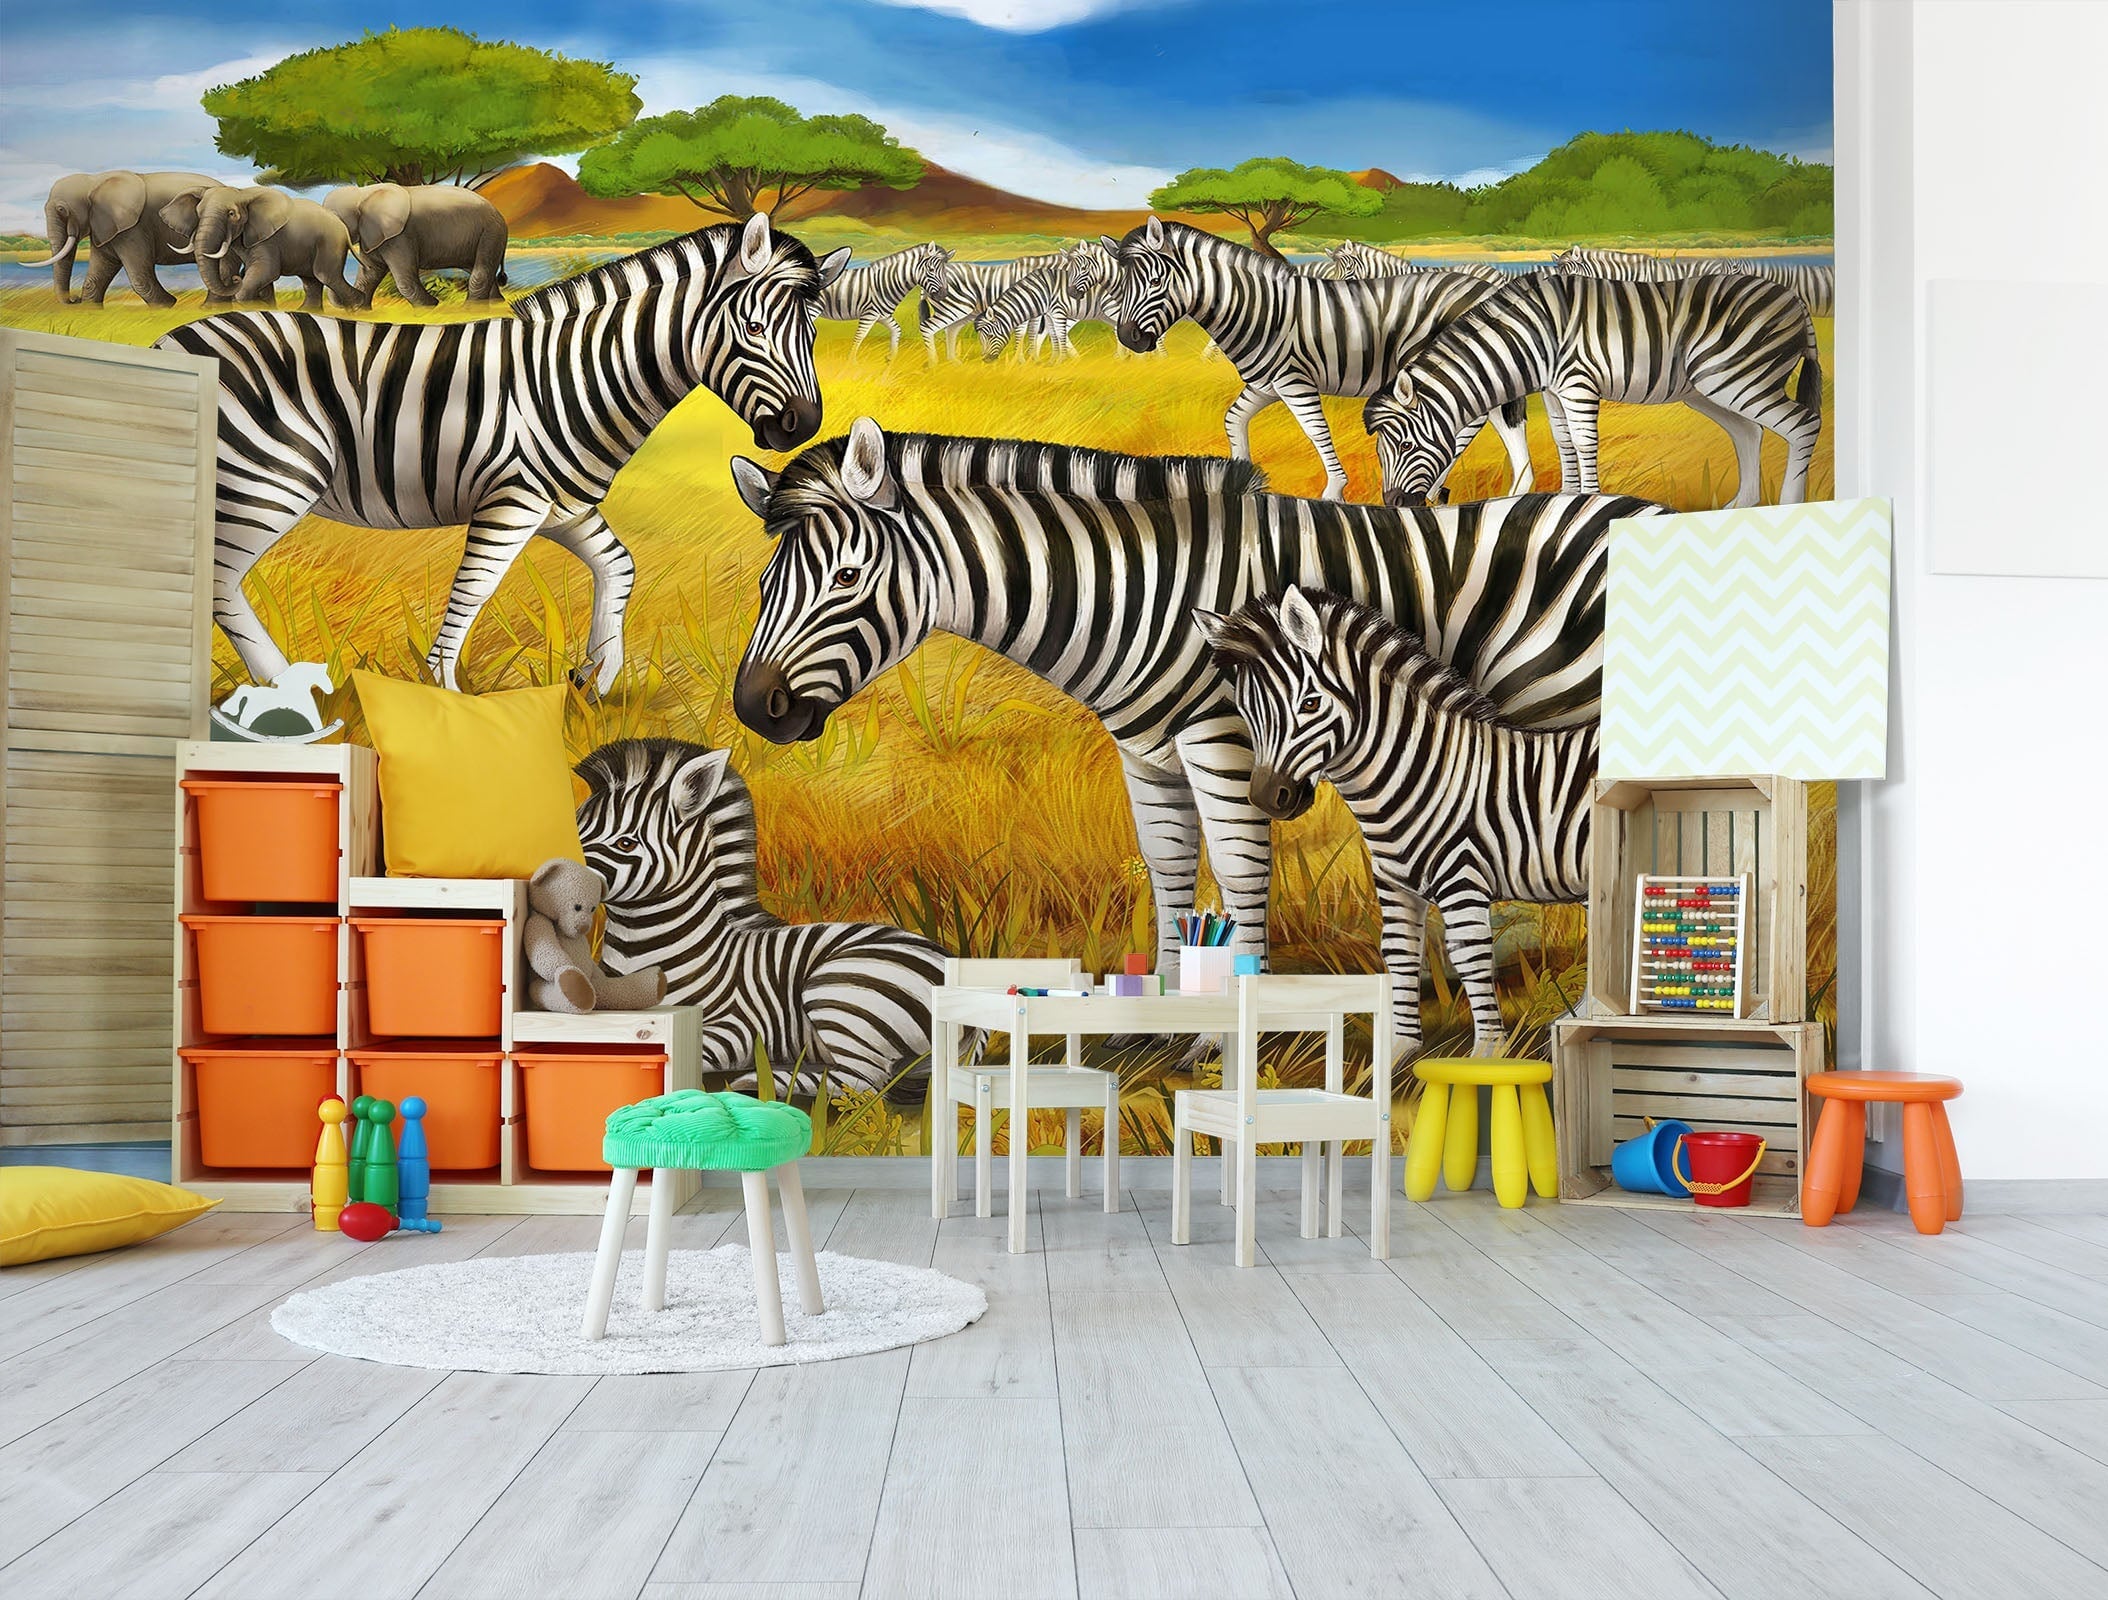 3D Grassland Zebra 049 Wall Murals Wallpaper AJ Wallpaper 2 